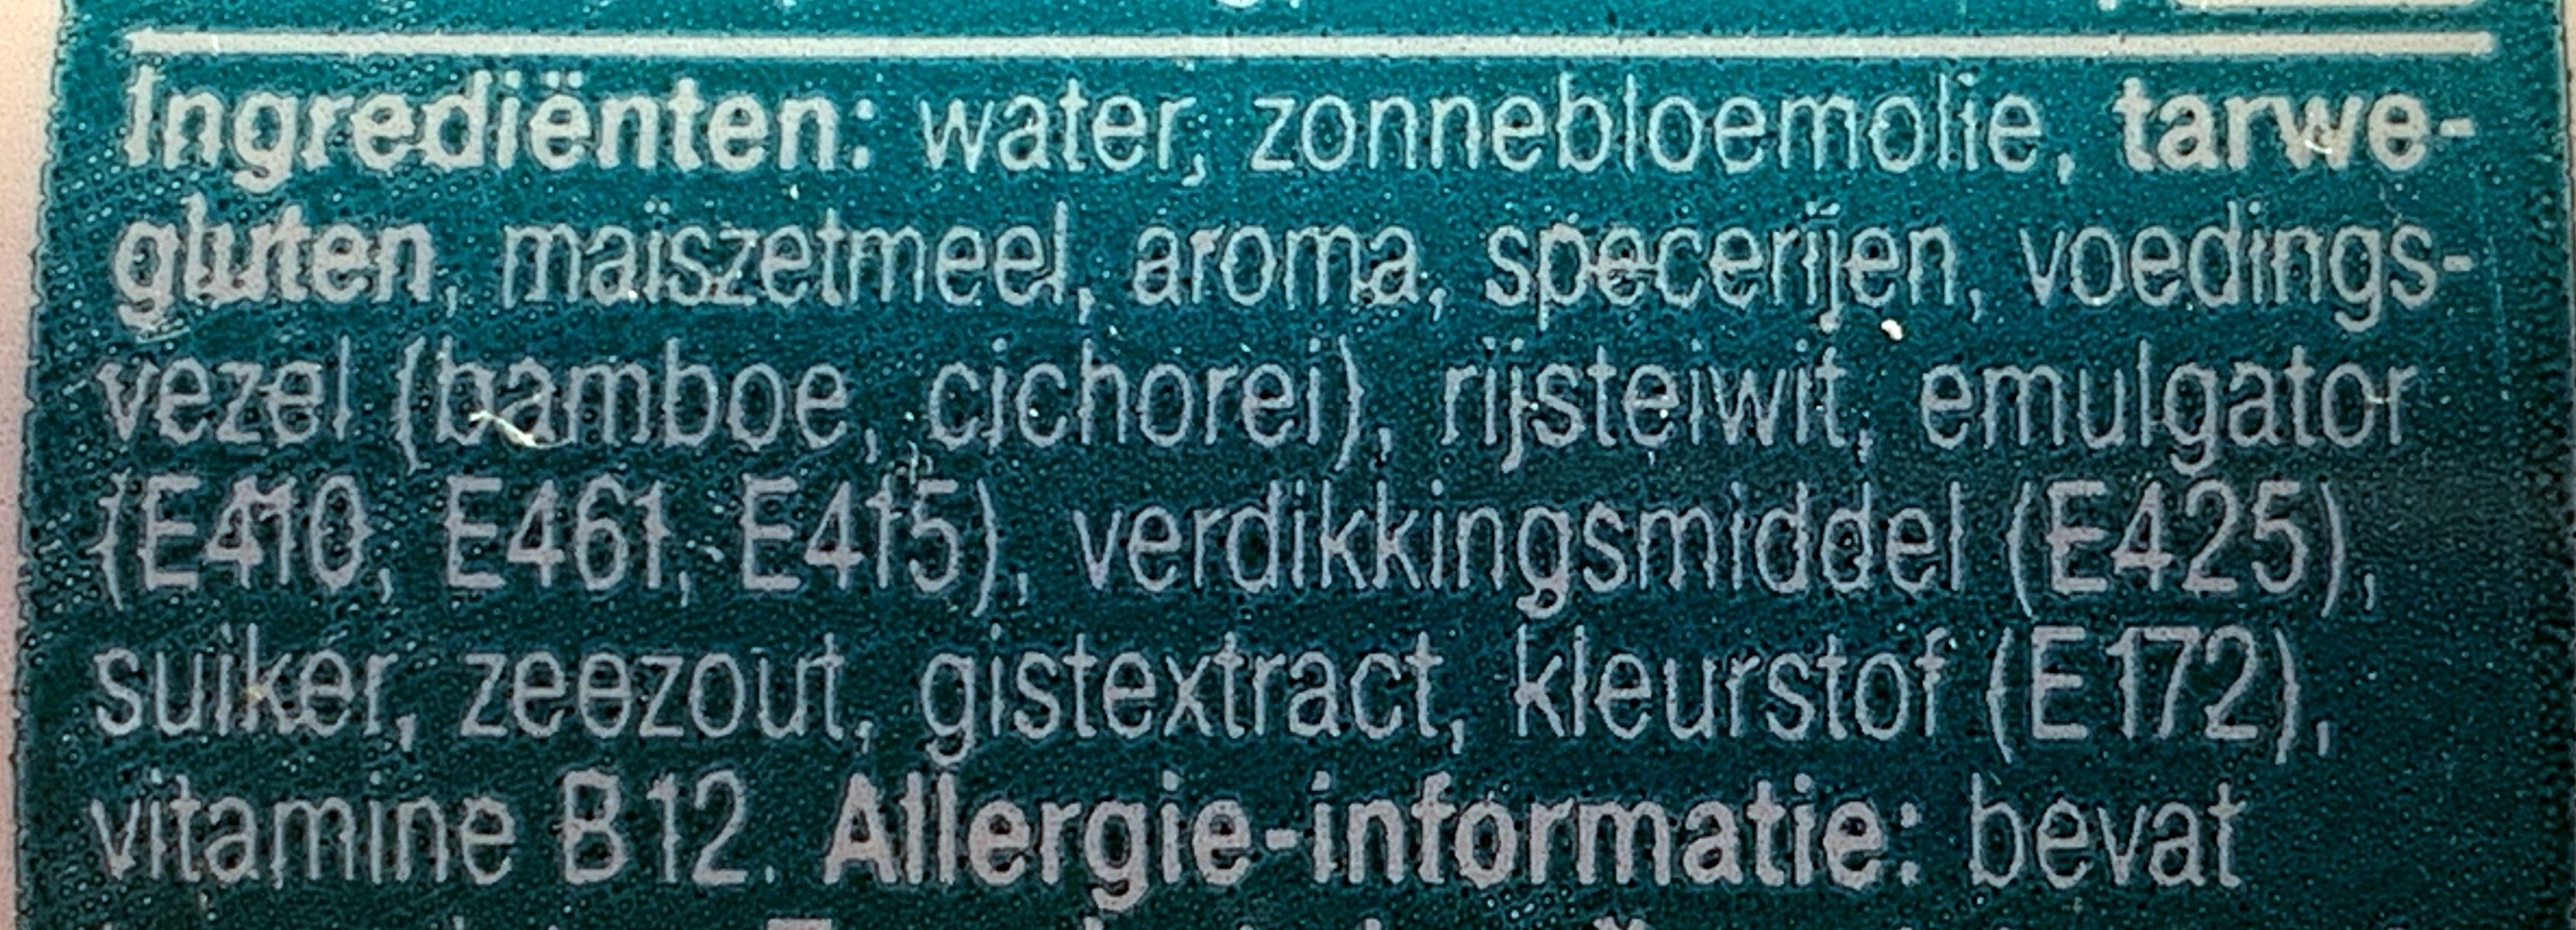 Vegan smeerleverworst - Ingredients - nl